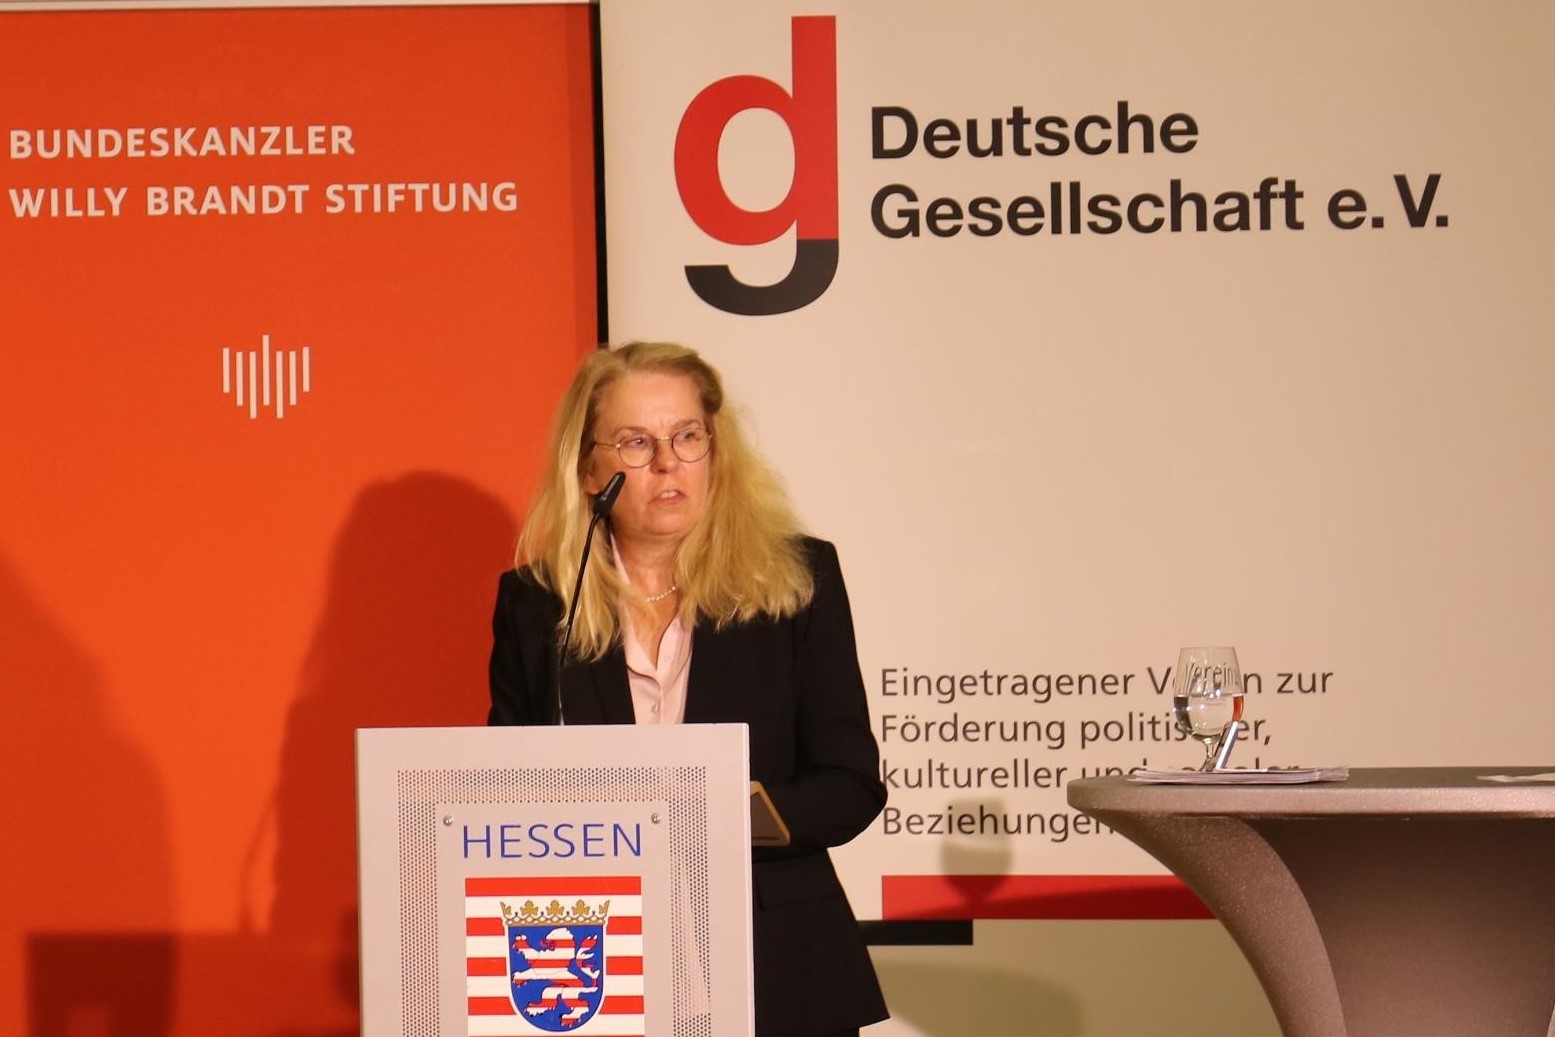 Verabschiedung von Maria Bering, Ministerialdirektorin bei der Beauftragten der Bundesregierung für Kultur und Medien © Deutsche Gesellschaft e.V.